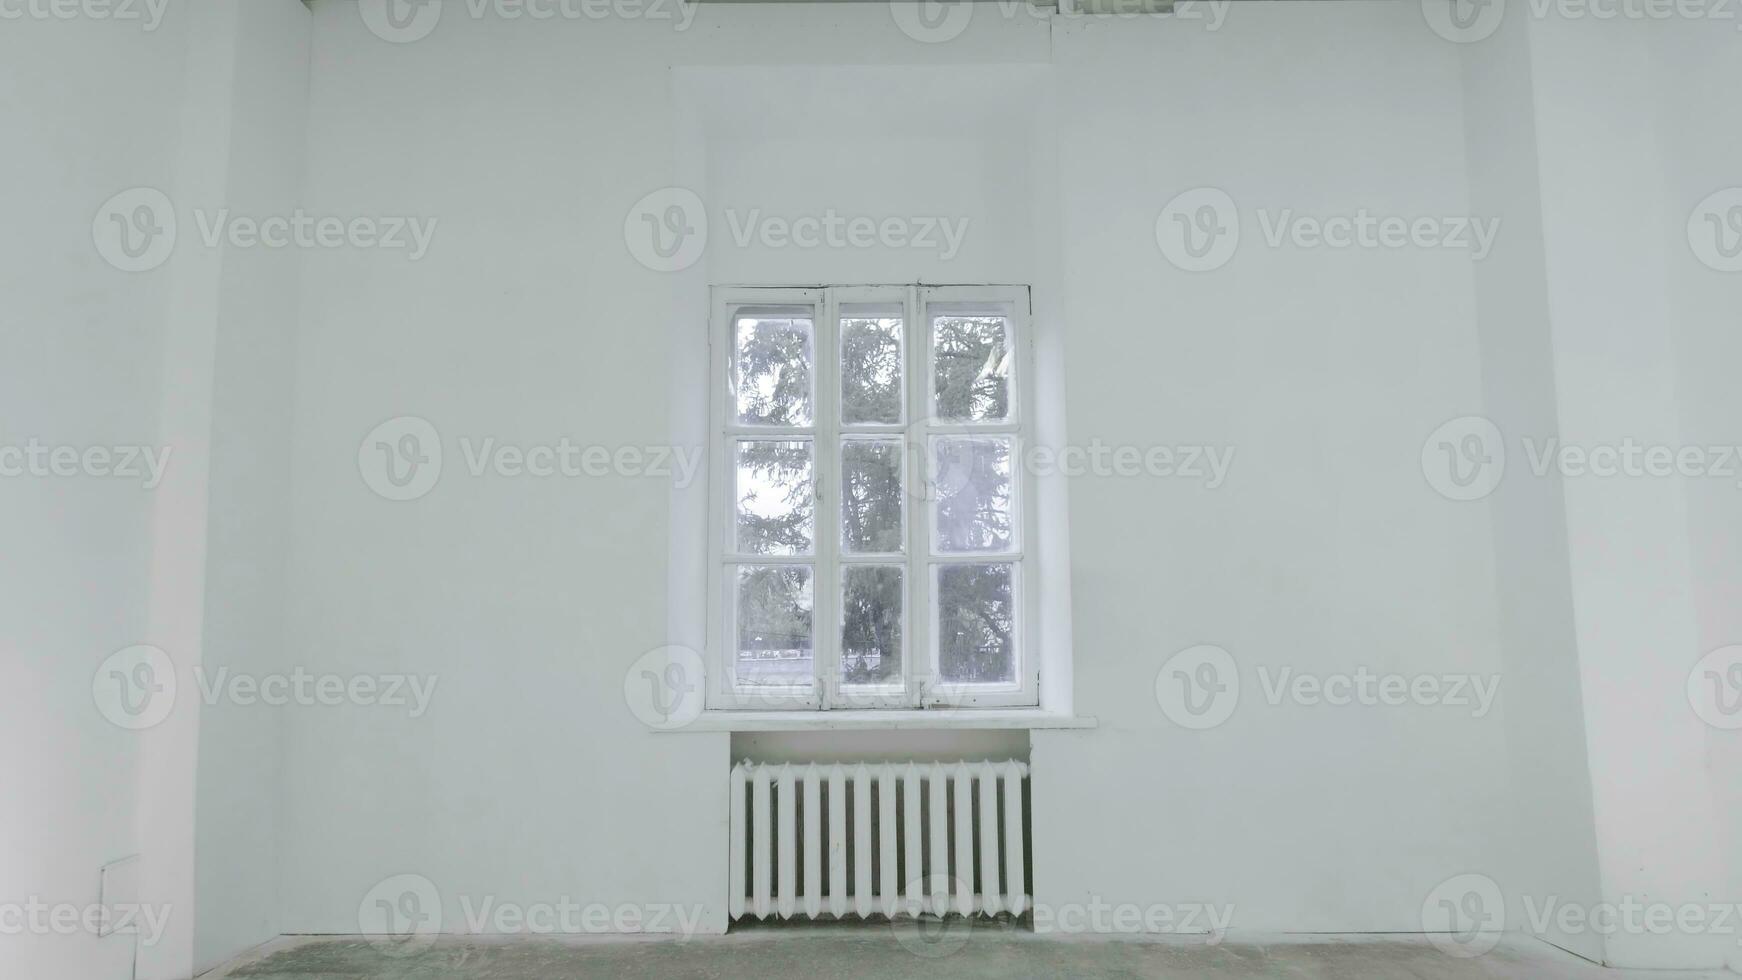 tom vit vägg med fönster. glida rörelse av rörelse eller slå de kamera på tömma ljus vit rum med fönster. konstruktion Hem tömma rum interiör fönster aluminium på vägg foto